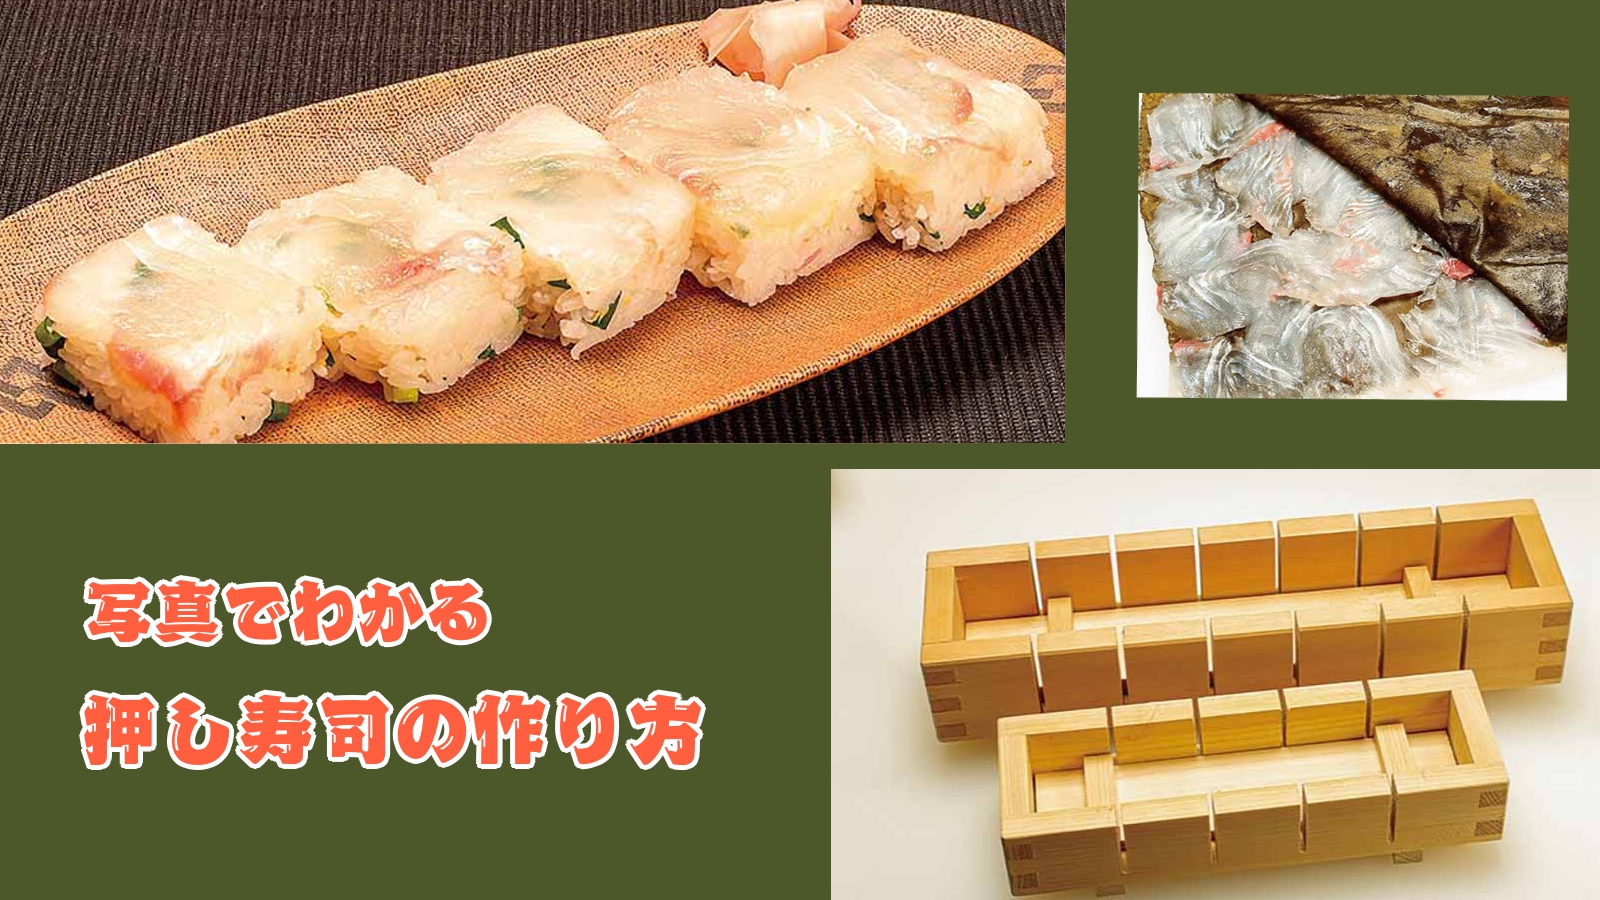 【レシピ】押し寿司の作り方【料理】